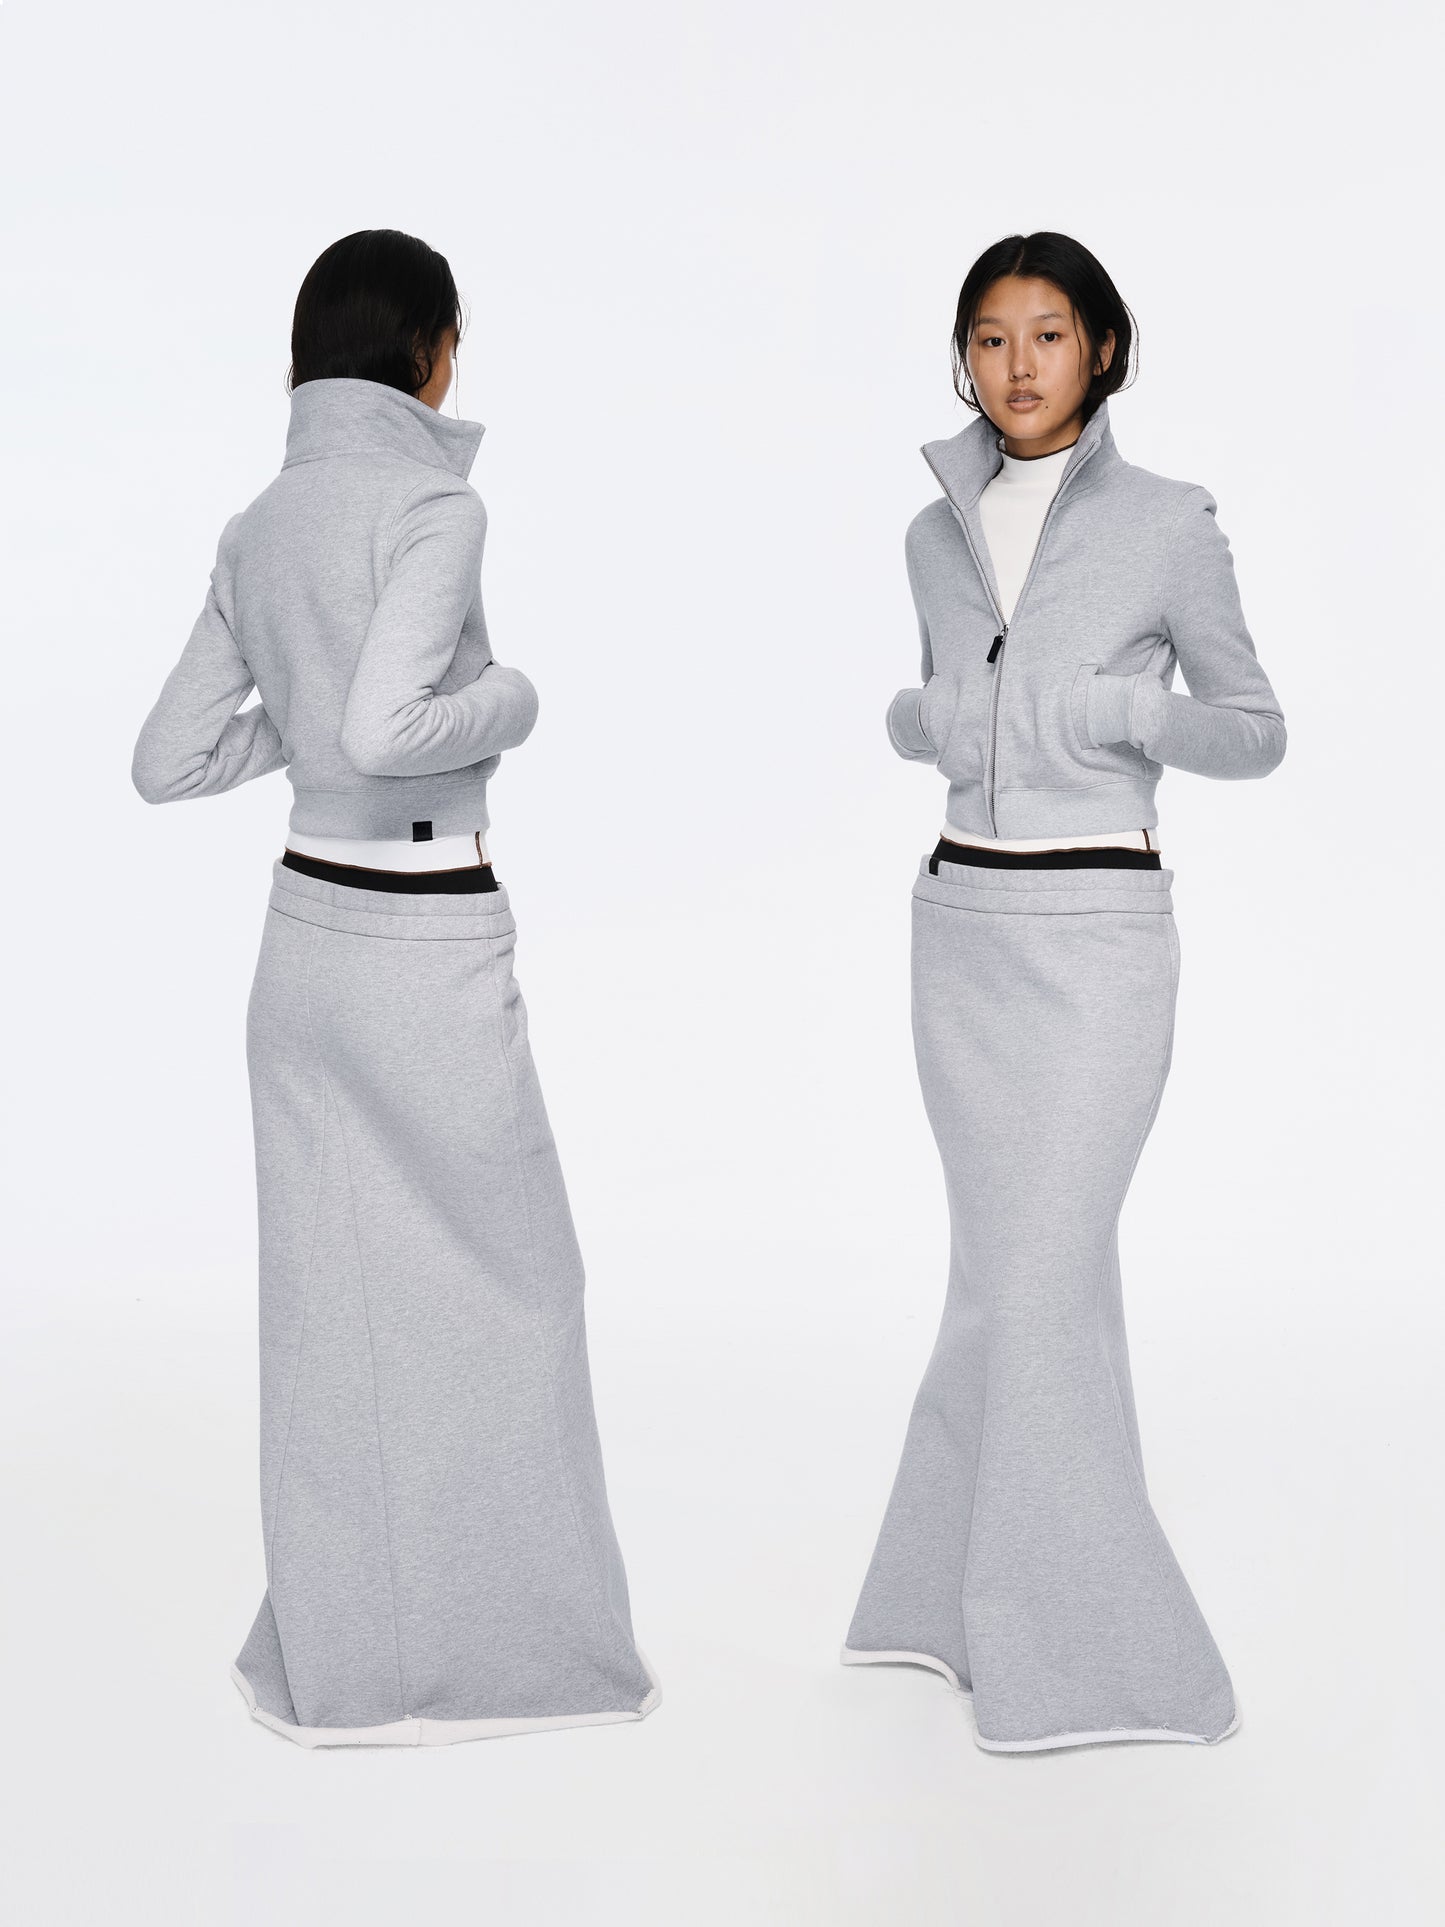 The Double-waist Fleece Fishtail Midi Skirt